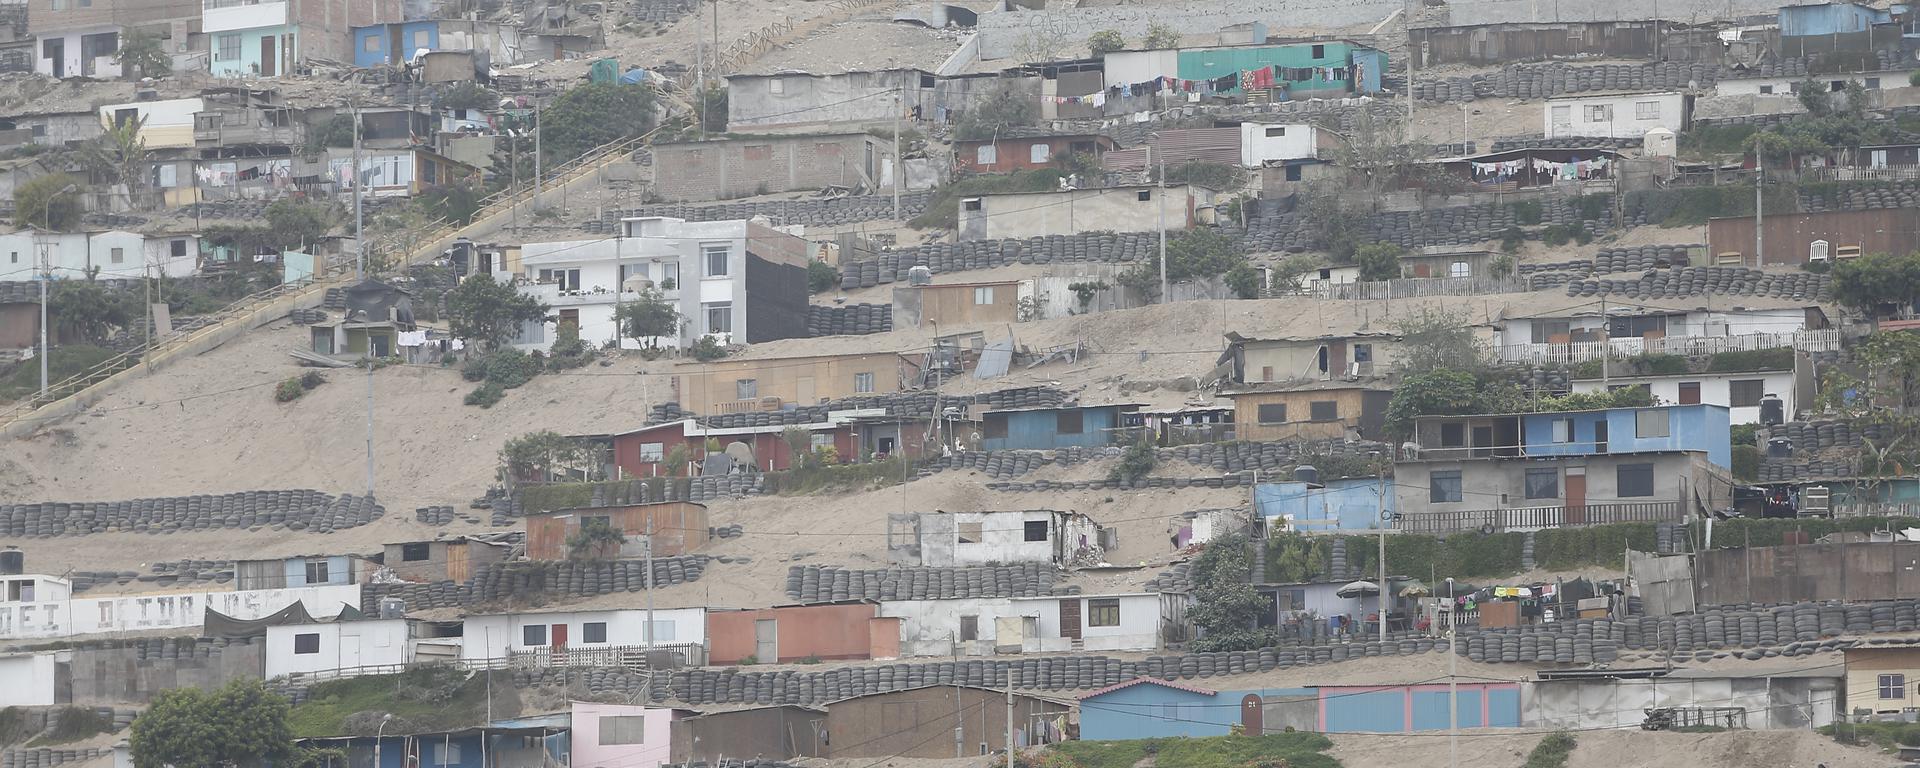 Los suelos que amplifican las ondas de los sismos y por qué Lima es altamente vulnerable | #EstemosListos